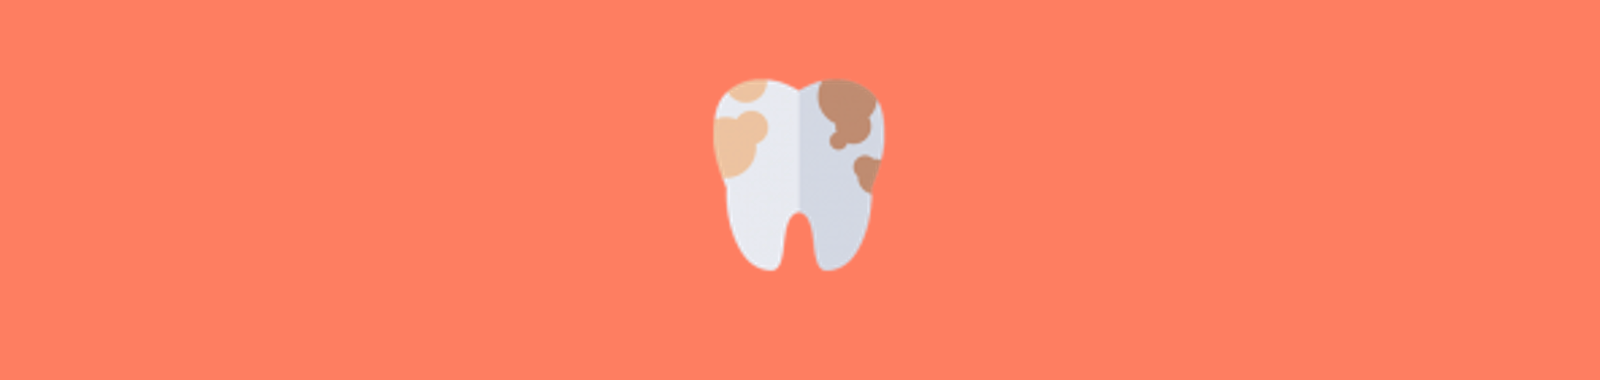 Dente com placa bacteriana – Problemas na boca